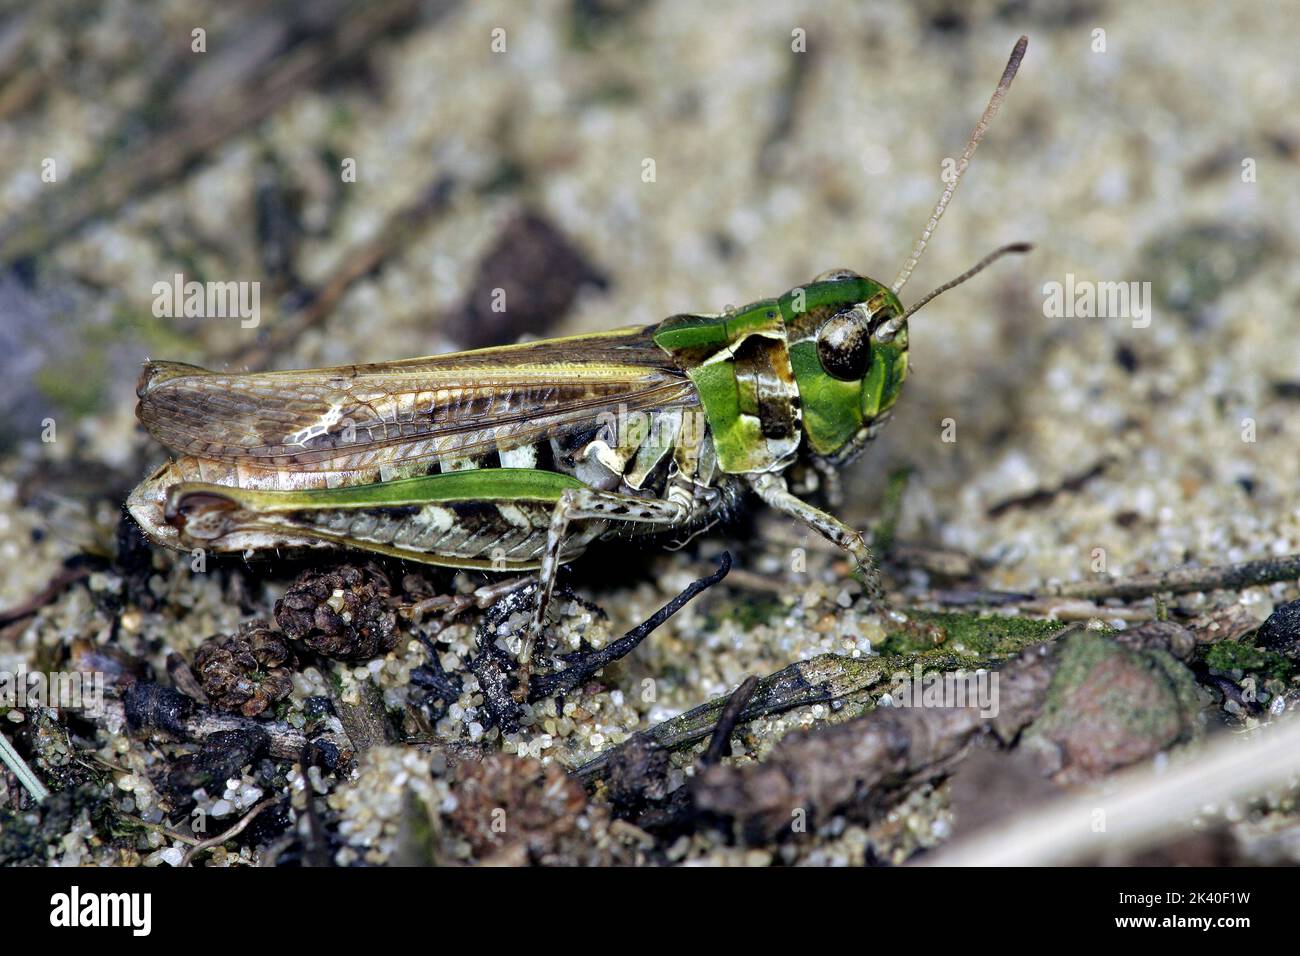 mottled grasshopper (Myrmeleotettix maculatus, Gomphocerus maculatus), female on sandy ground, Germany Stock Photo